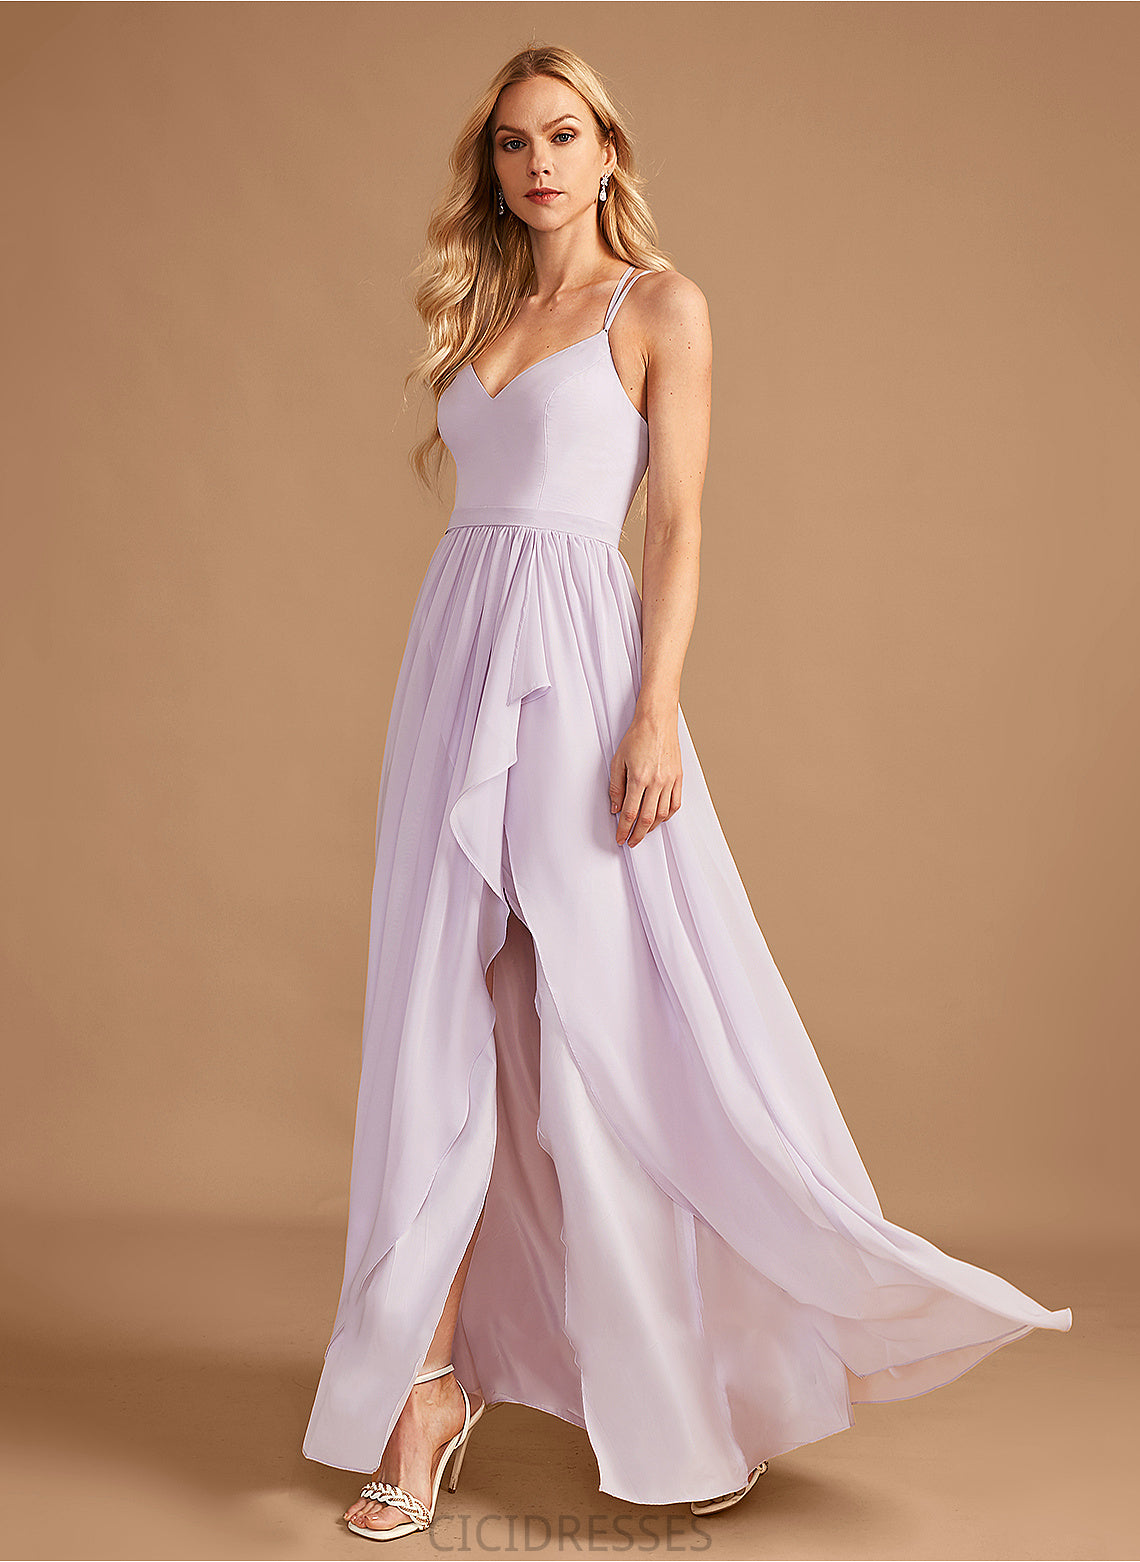 SplitFront Silhouette Asymmetrical Length Ruffle V-neck Embellishment Fabric Neckline A-Line Dakota Natural Waist Bridesmaid Dresses